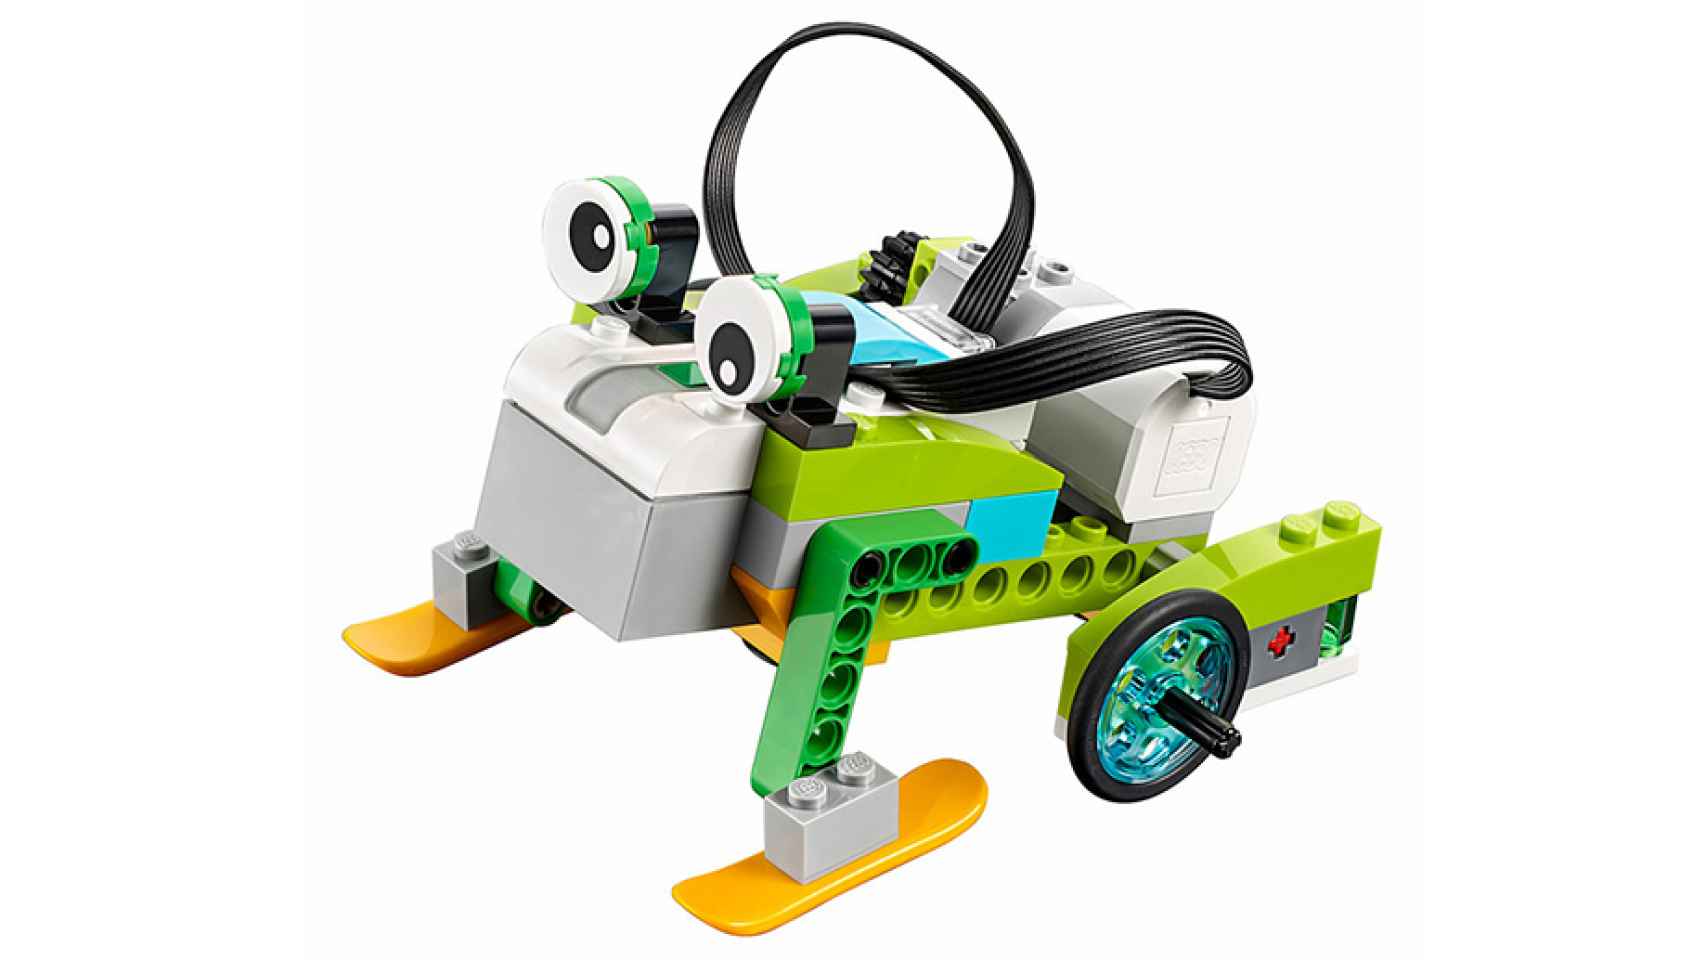 Lego WeDo permite montar distintos robots